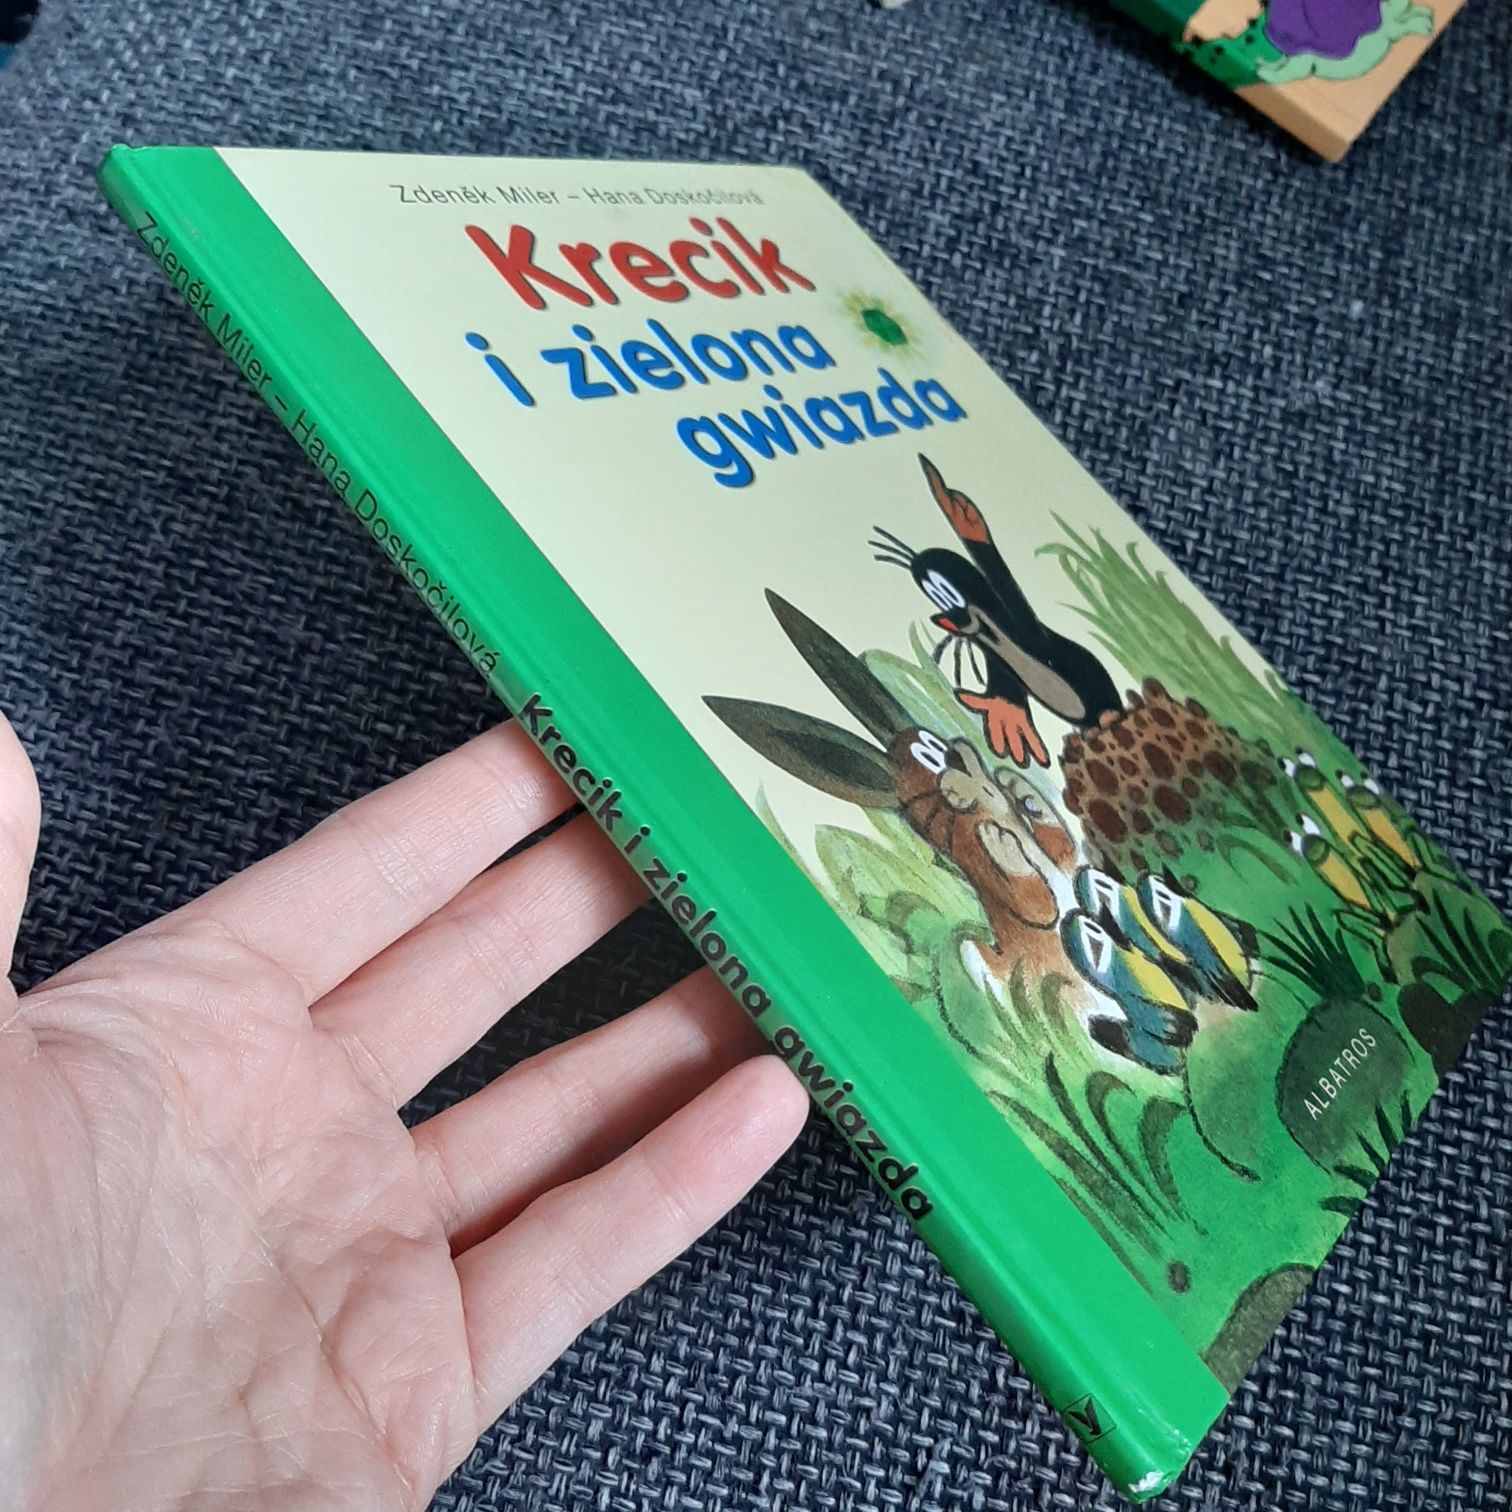 Krecik i zielona gwiazda książka dla dzieci 2008 perełka, stan bardzo